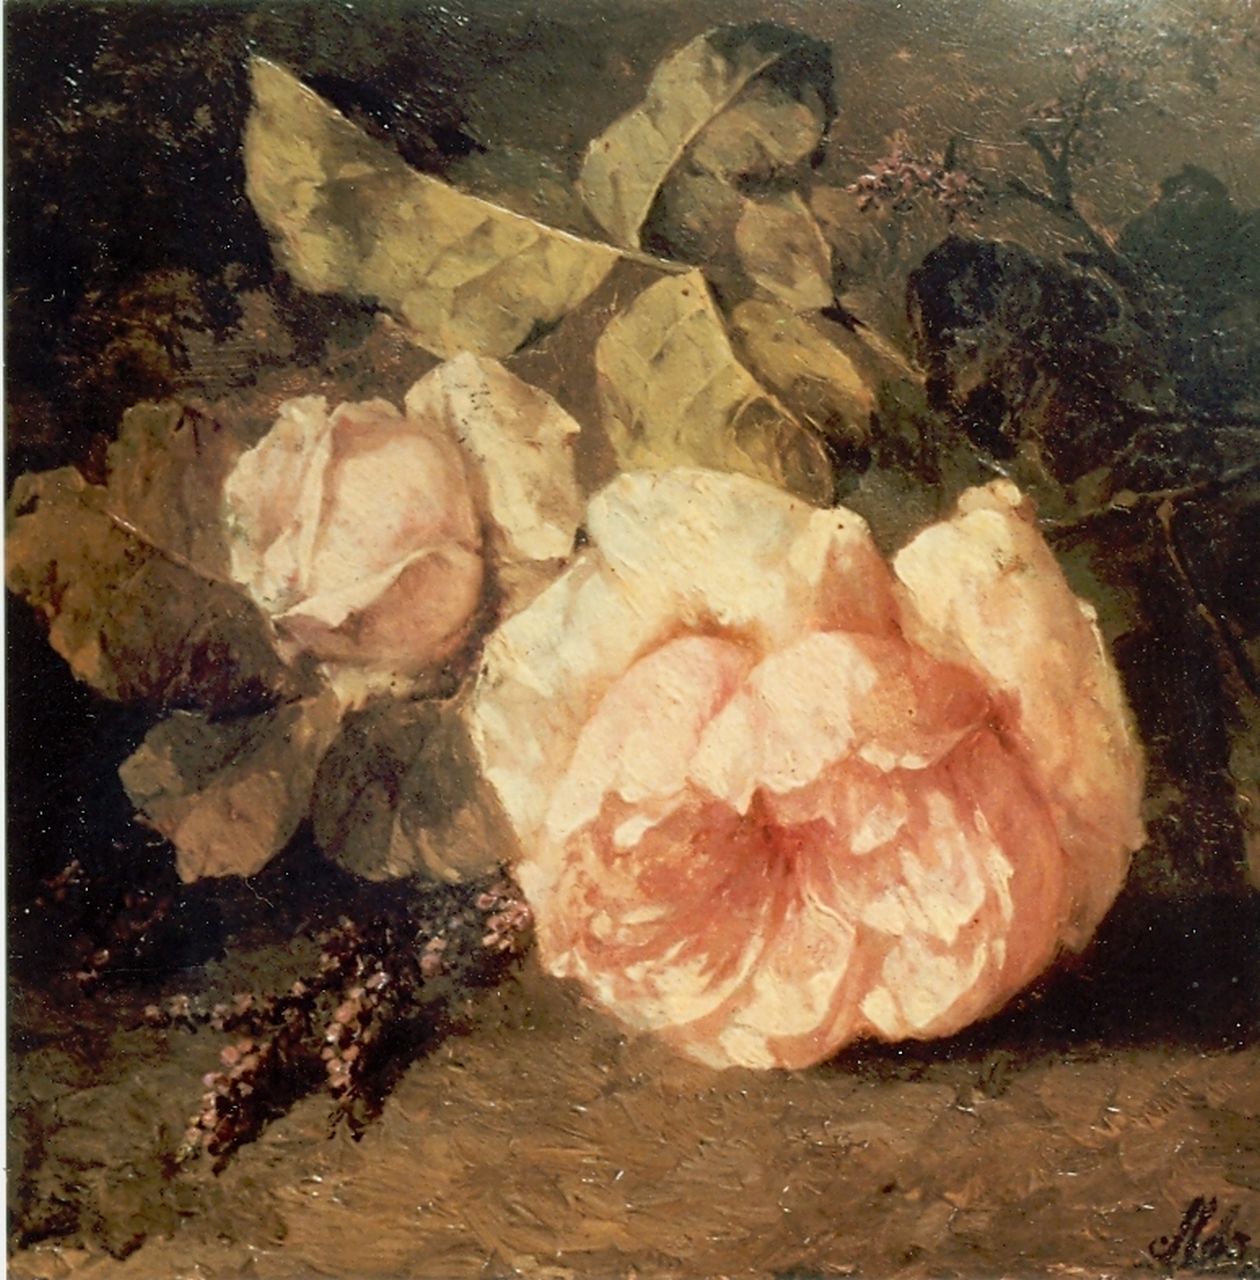 Roosenboom M.C.J.W.H.  | 'Margaretha' Cornelia Johanna Wilhelmina Henriëtta Roosenboom, Een takje roze rozen op de bosgrond, olieverf op paneel 22,0 x 30,0 cm, gesigneerd rechtsonder